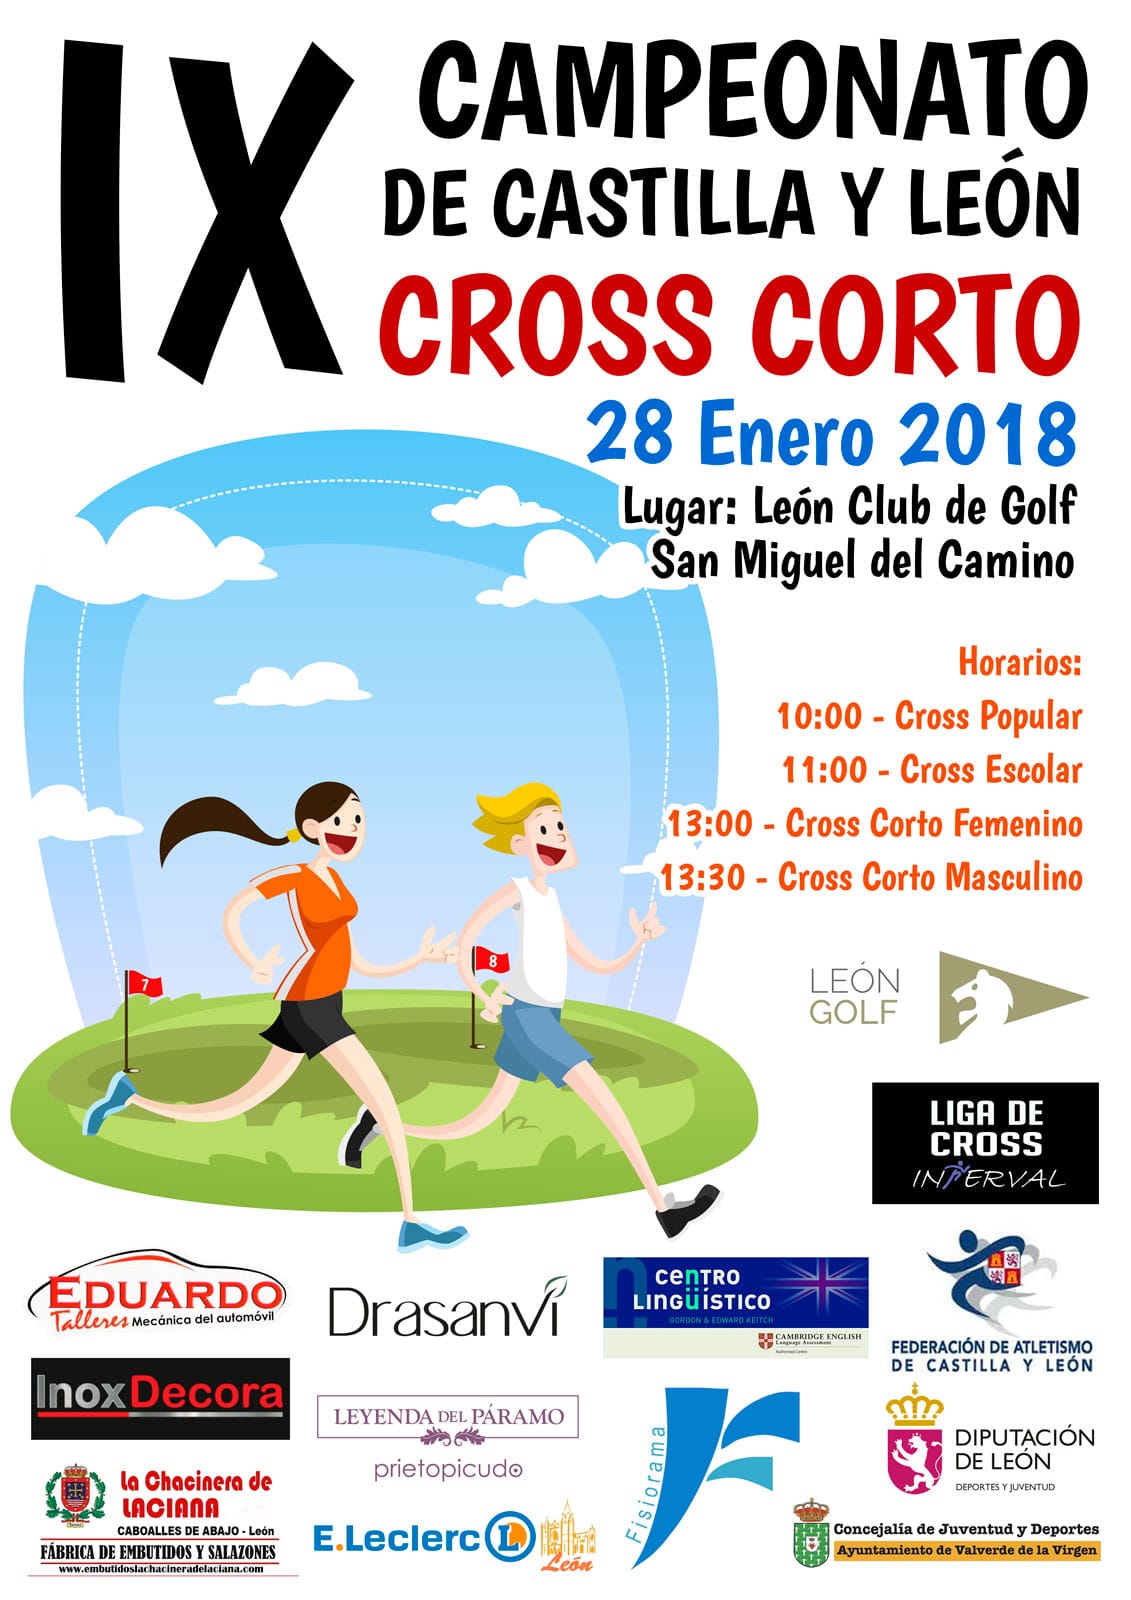 Campeonato Cross Corto 2018